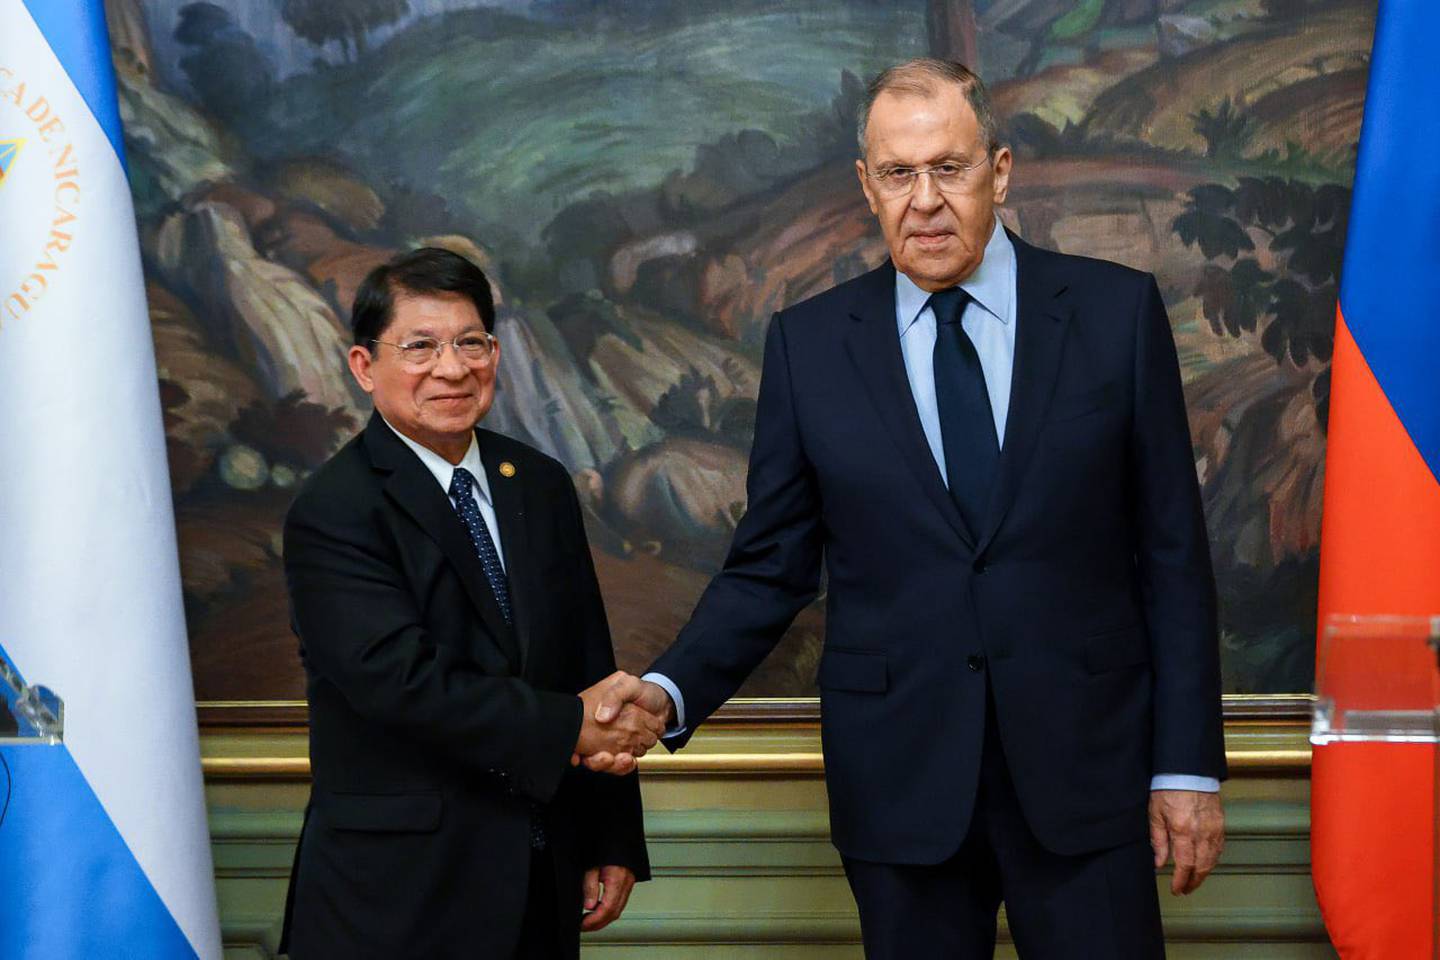 El canciller ruso Sergey Lavrov (der.) sostuvo conversaciones con el titular del Ministerio de Relaciones Exteriores de la República de Nicaragua, Denis Moncada (izq).